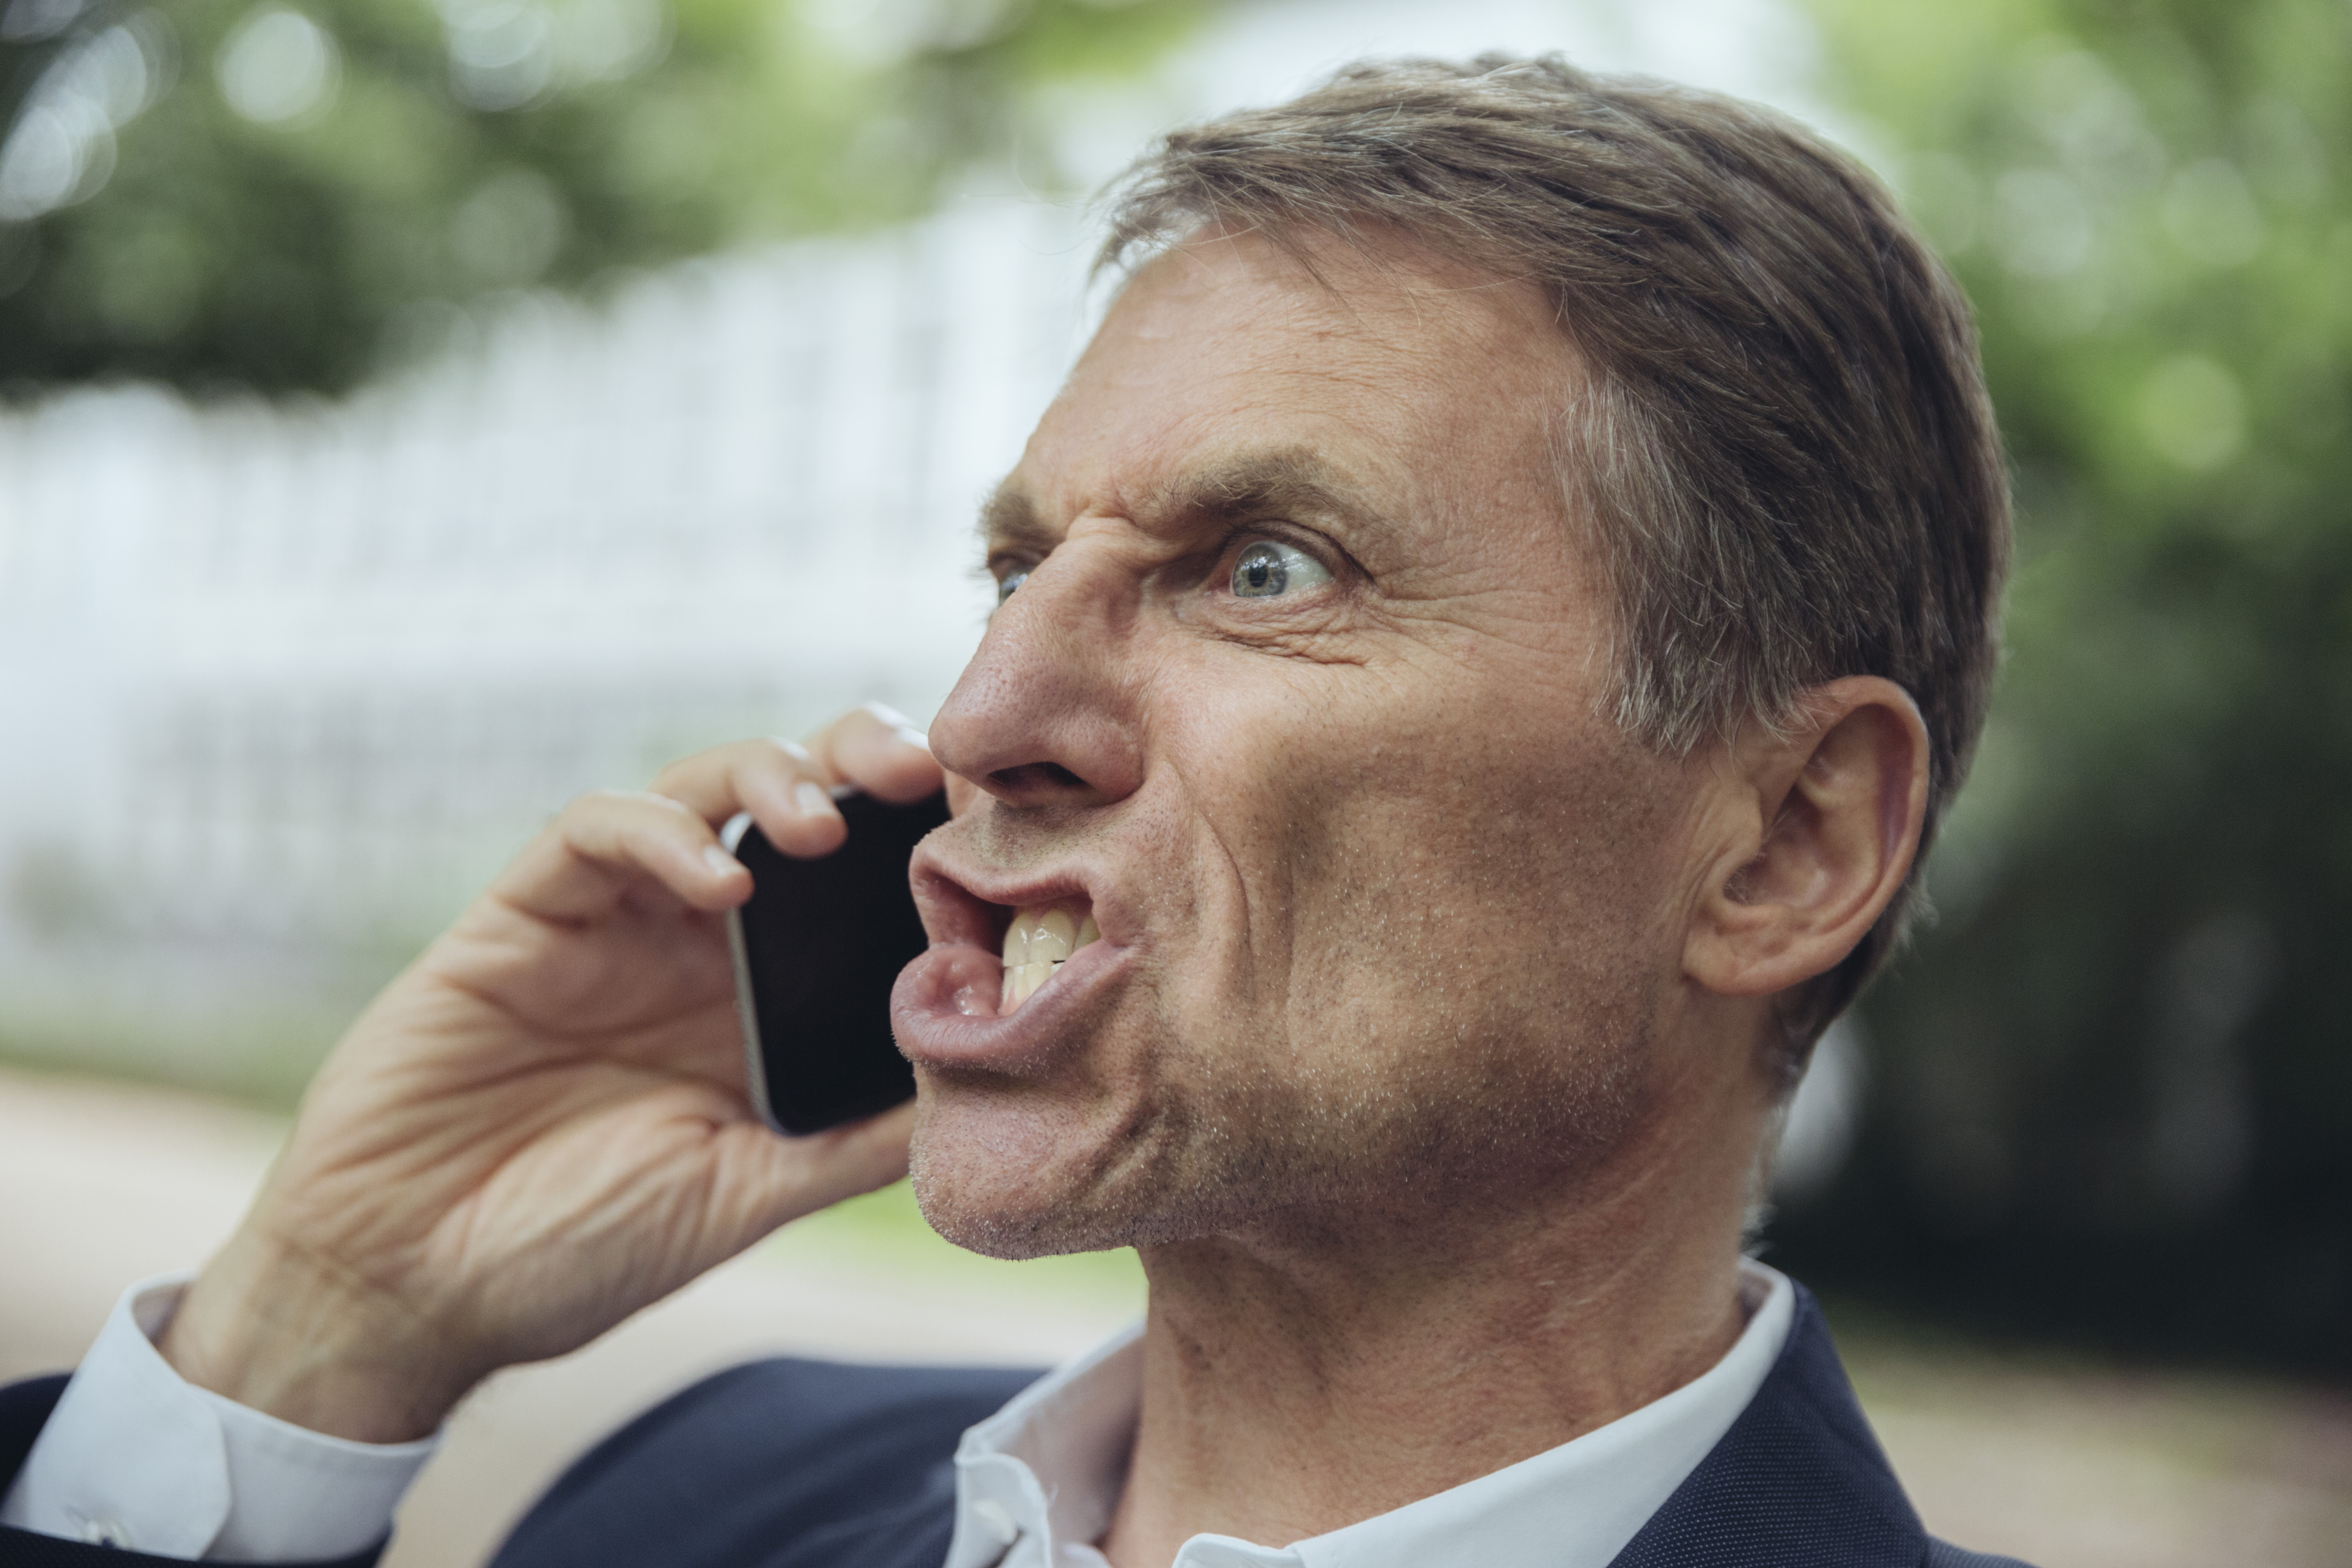 Homme mûr en colère au téléphone | Source : Getty Images